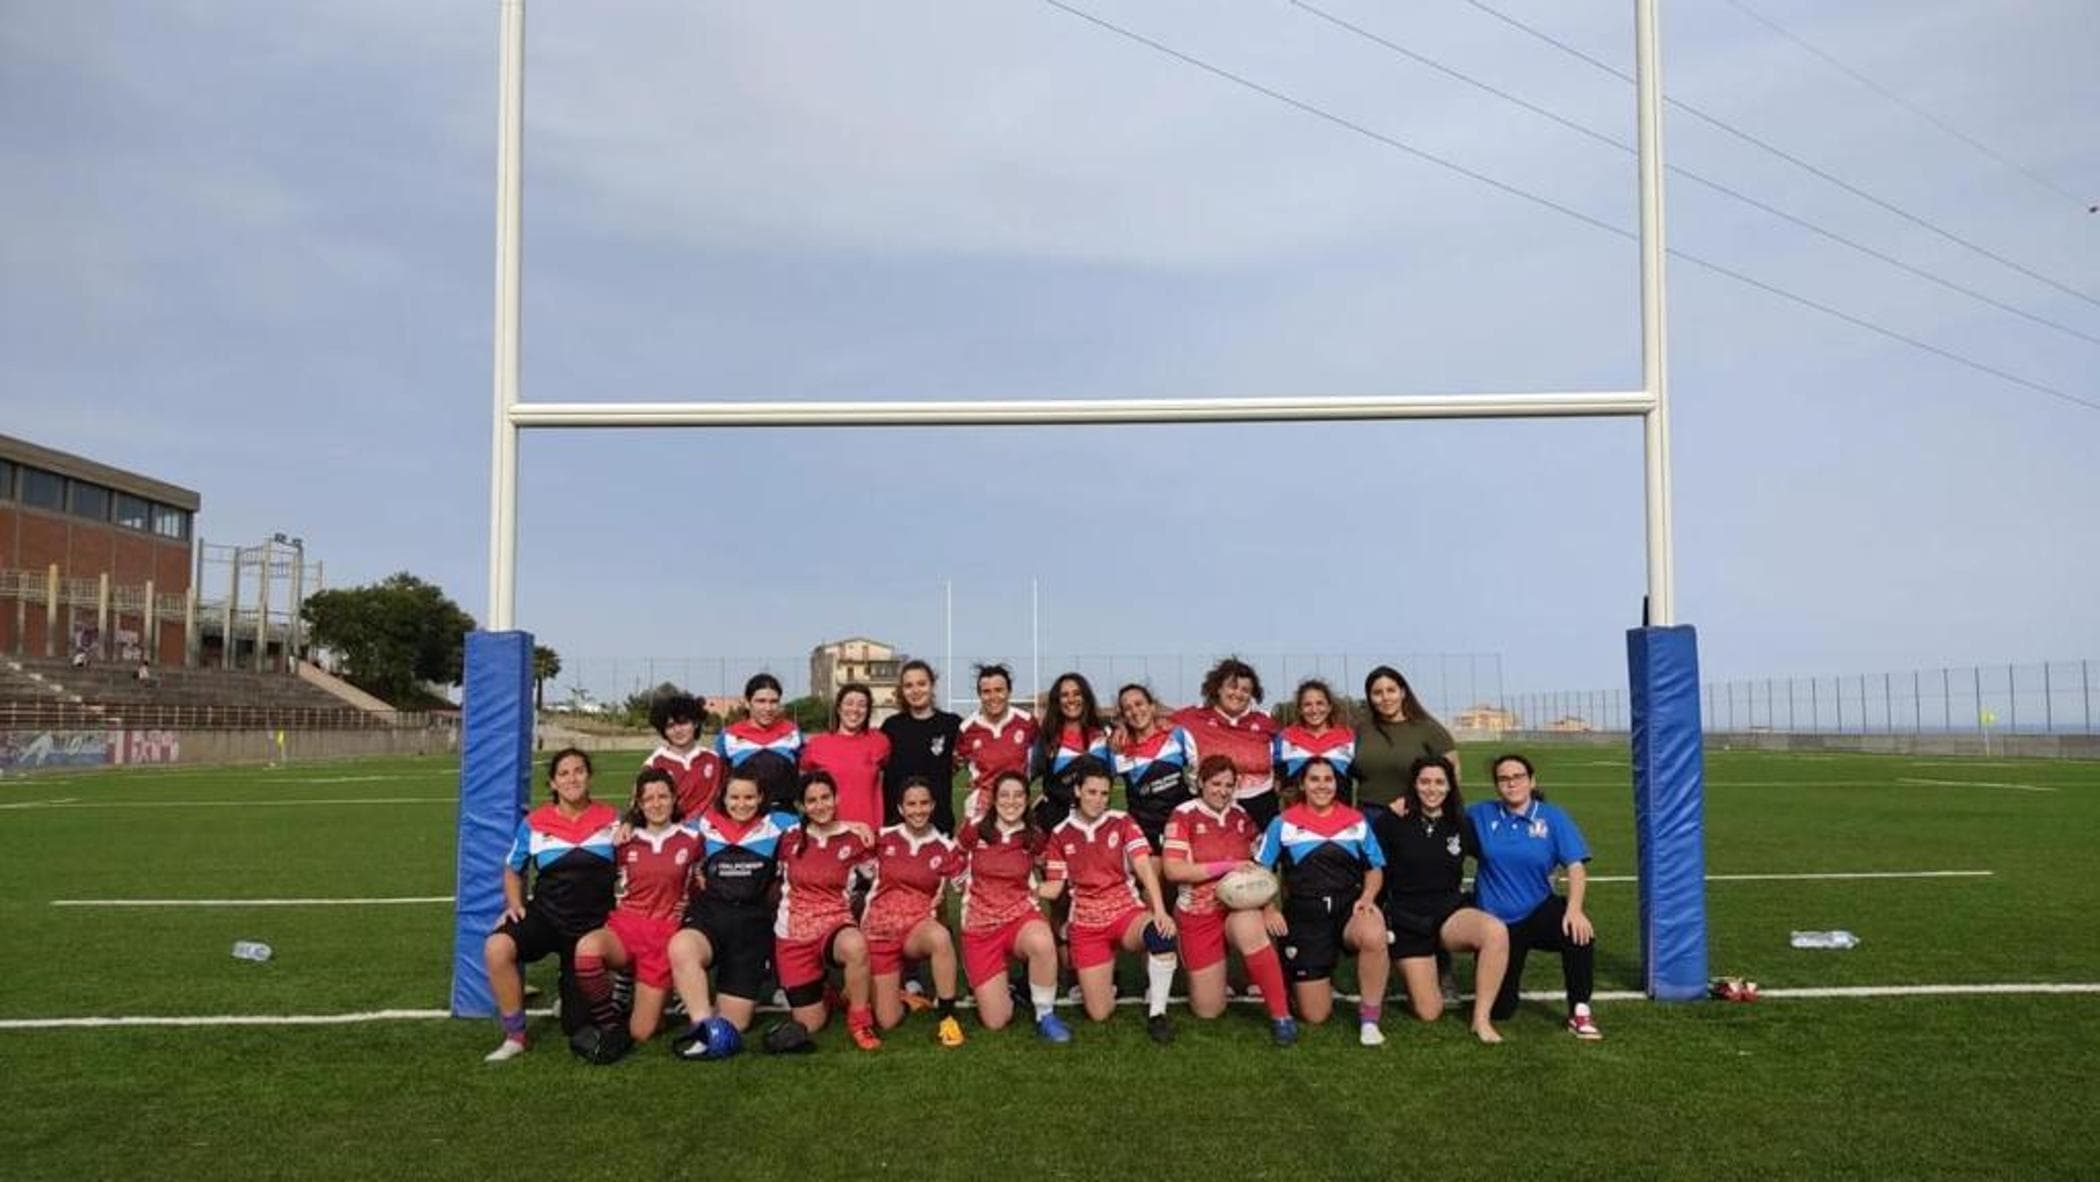 Le ragazze del rugby di Catania vanno in meta per